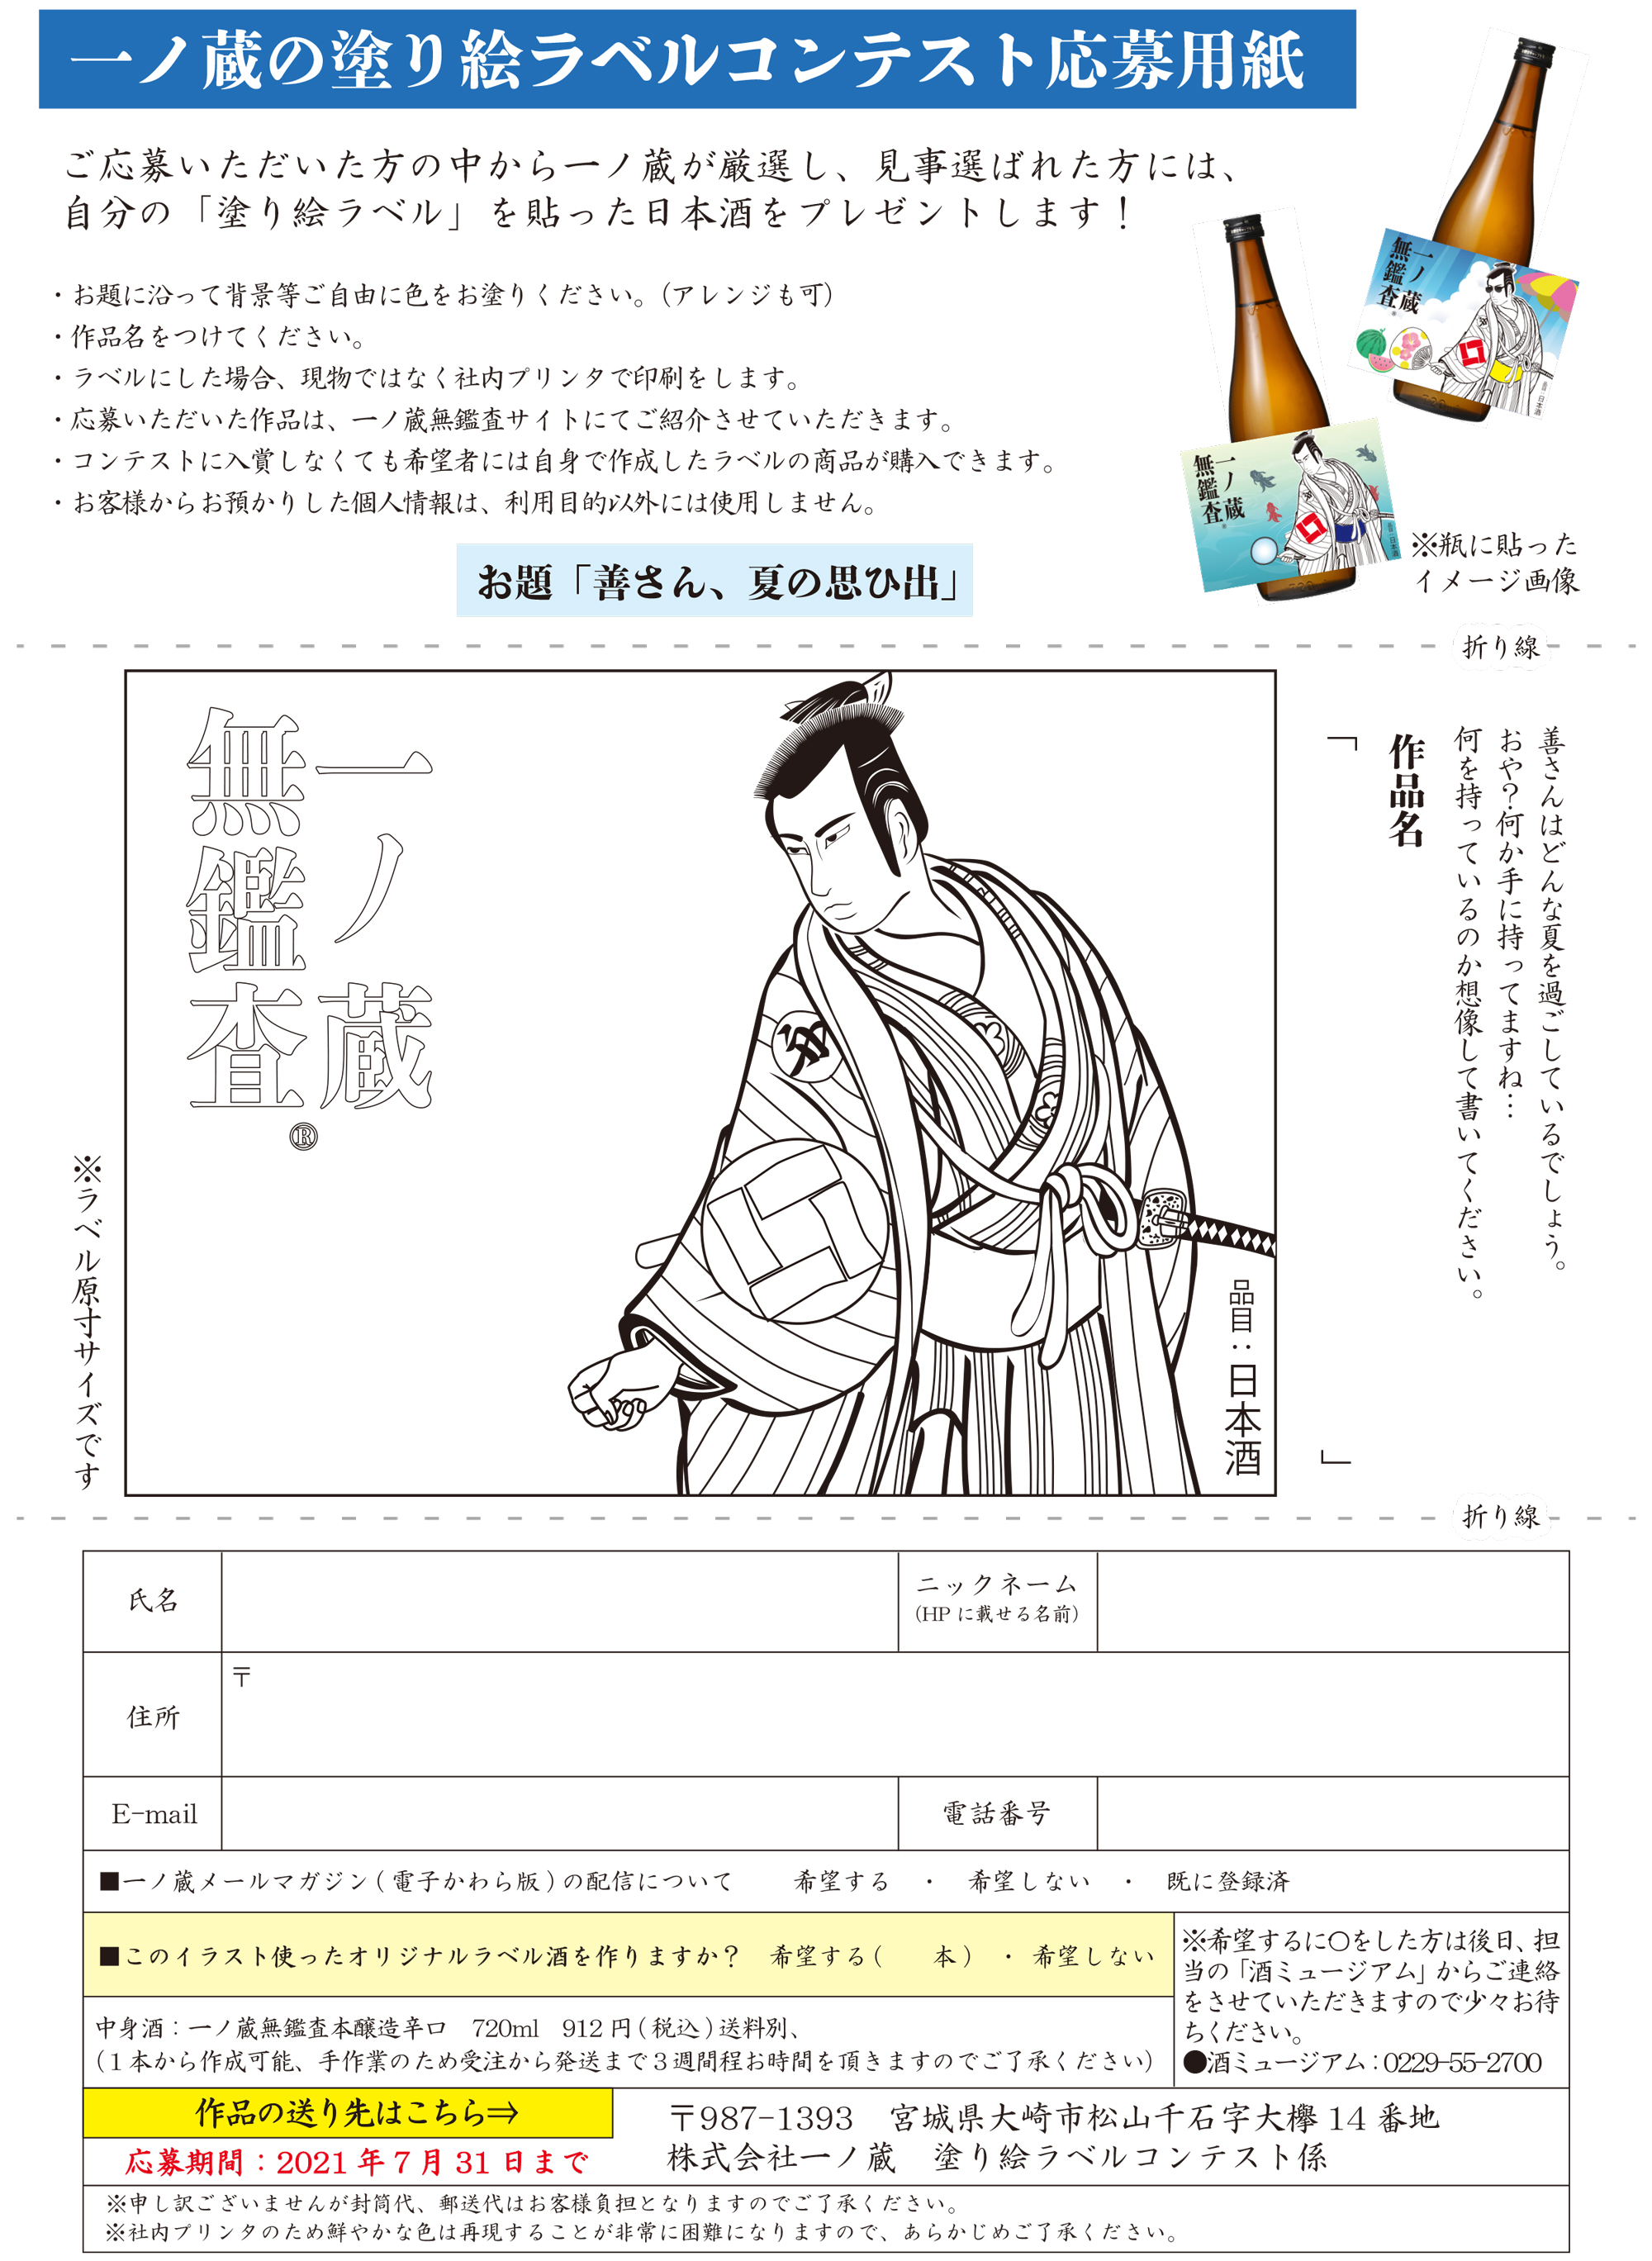 一ノ蔵の塗り絵ラベルコンテスト開催中 宮城県の伝統的な手づくりの日本酒蔵一ノ蔵